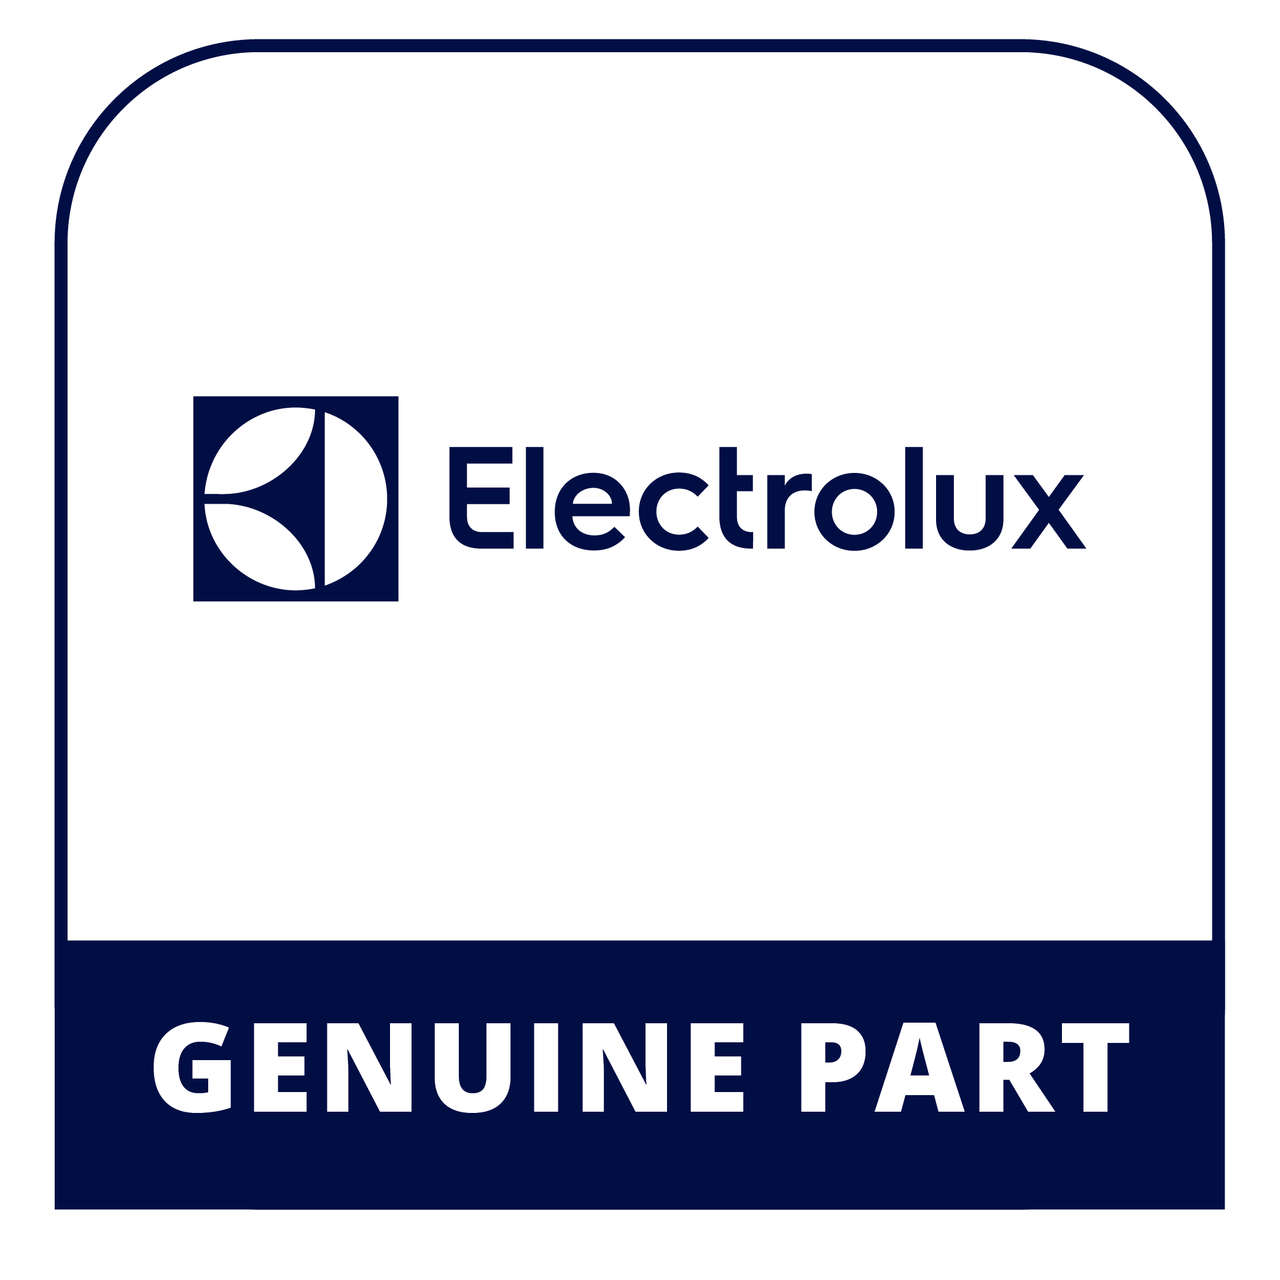 Frigidaire - Electrolux 5304513192 Fan Motor - Genuine Electrolux Part